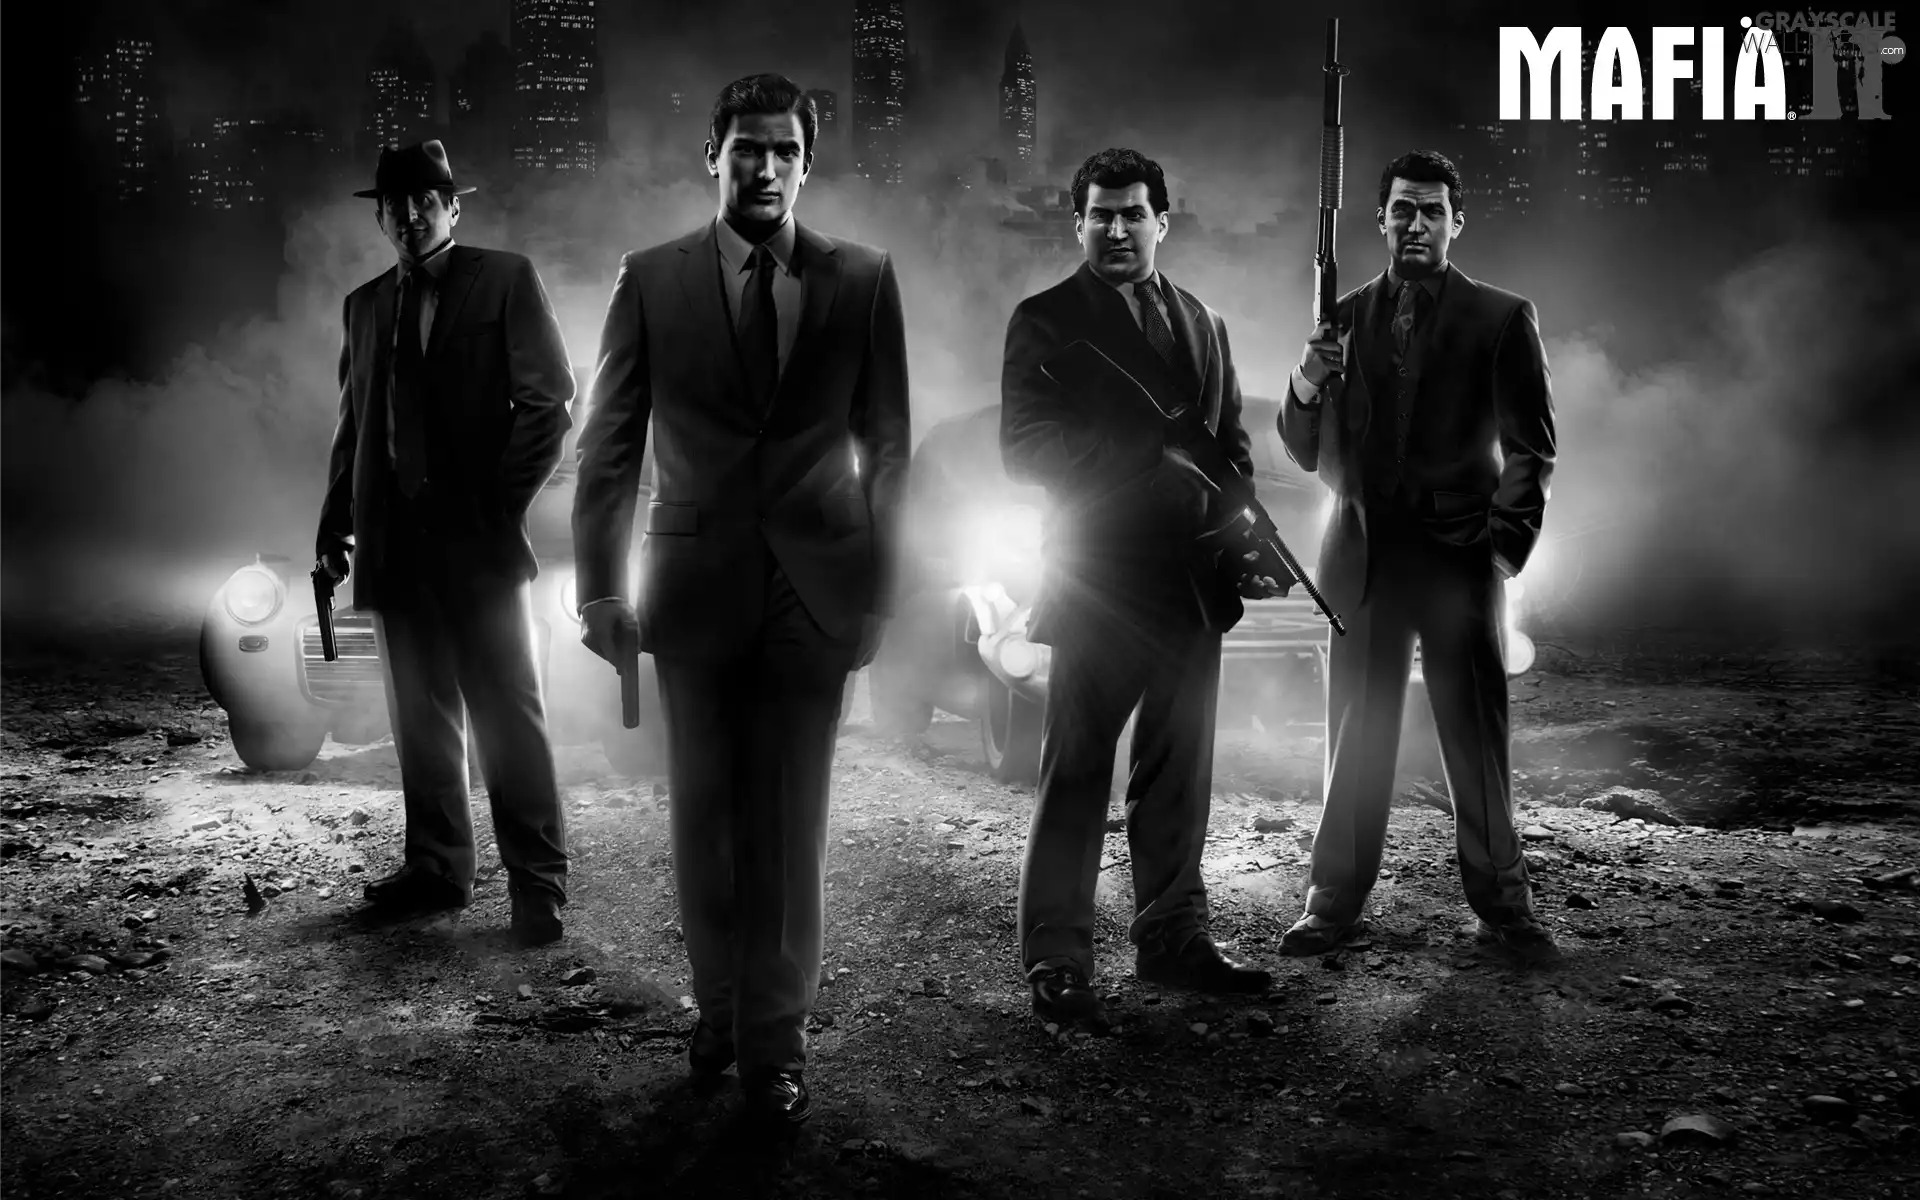 game, Mafia II